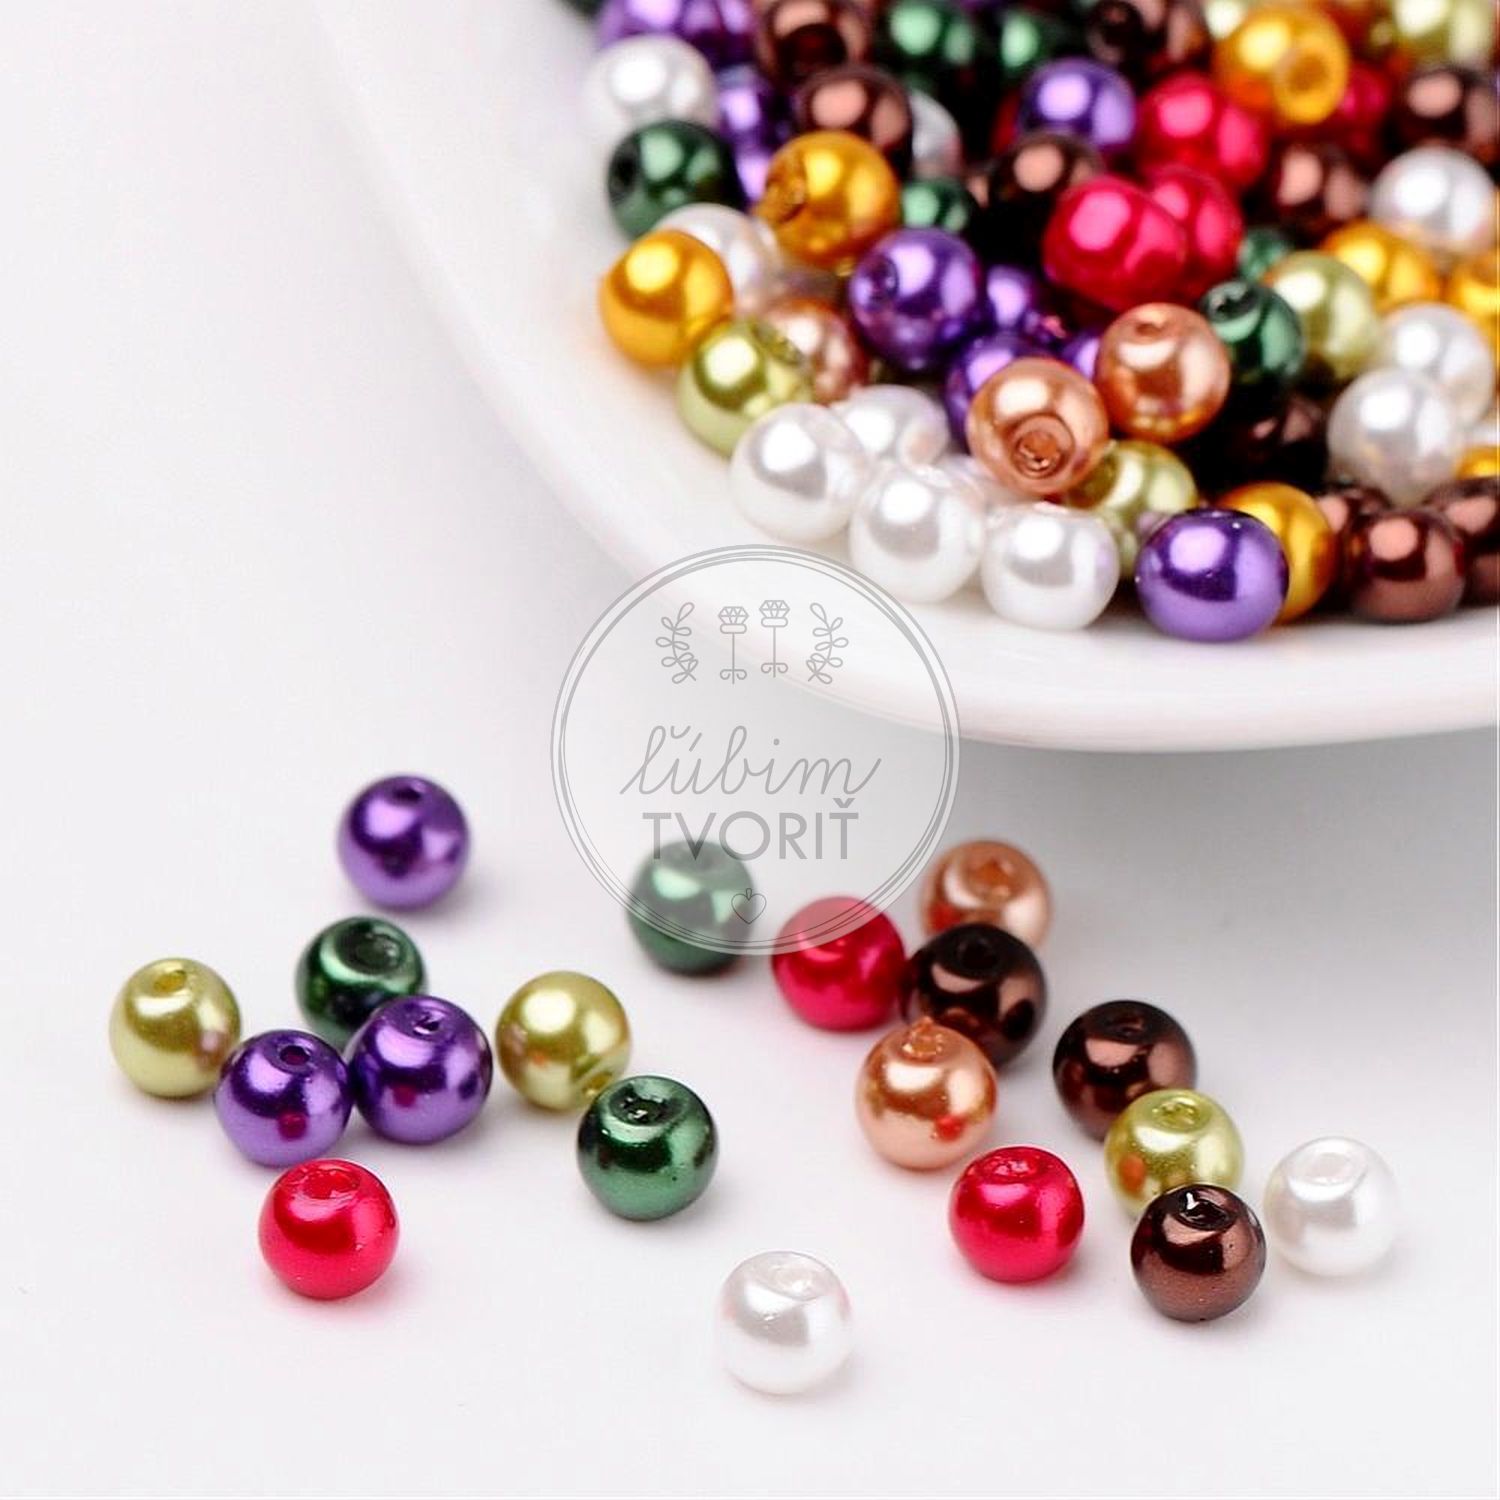 Sklenené perly, 4 mm - 10 g (cca 100ks)